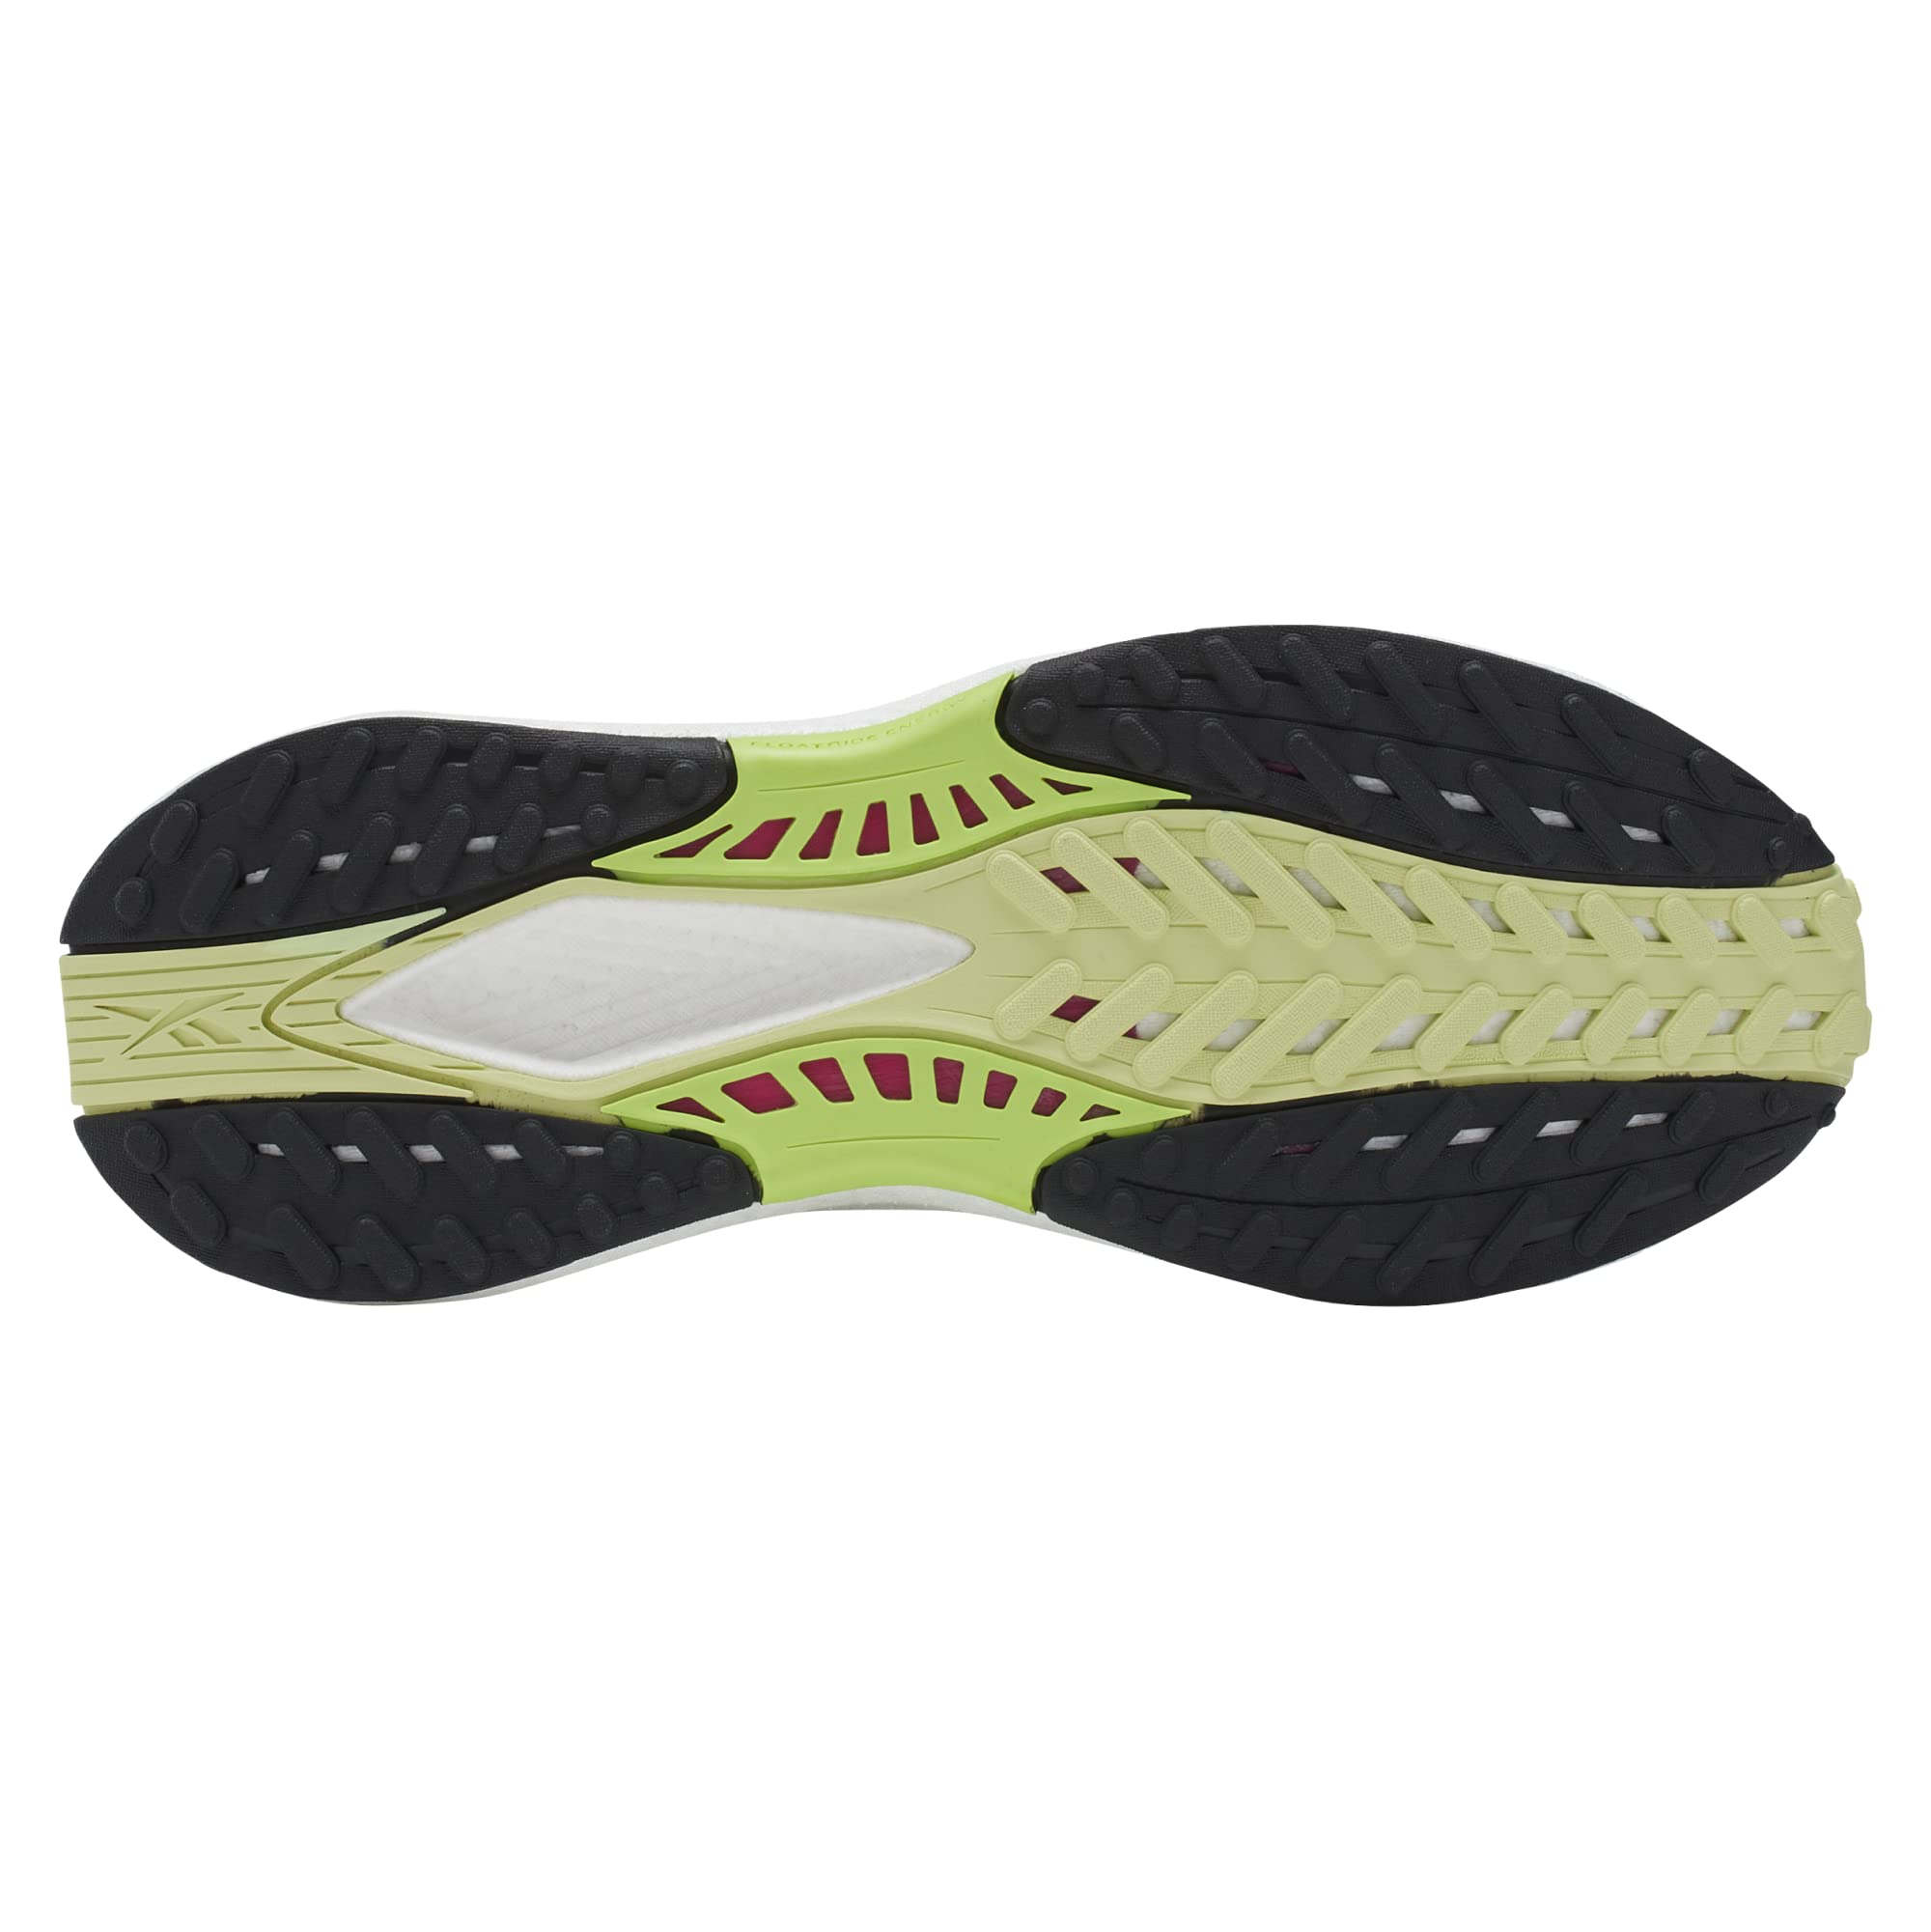 Reebok Women's Floatride Energy 5 Sneaker, Steely Fog/White/Citrus Glow, 6.5